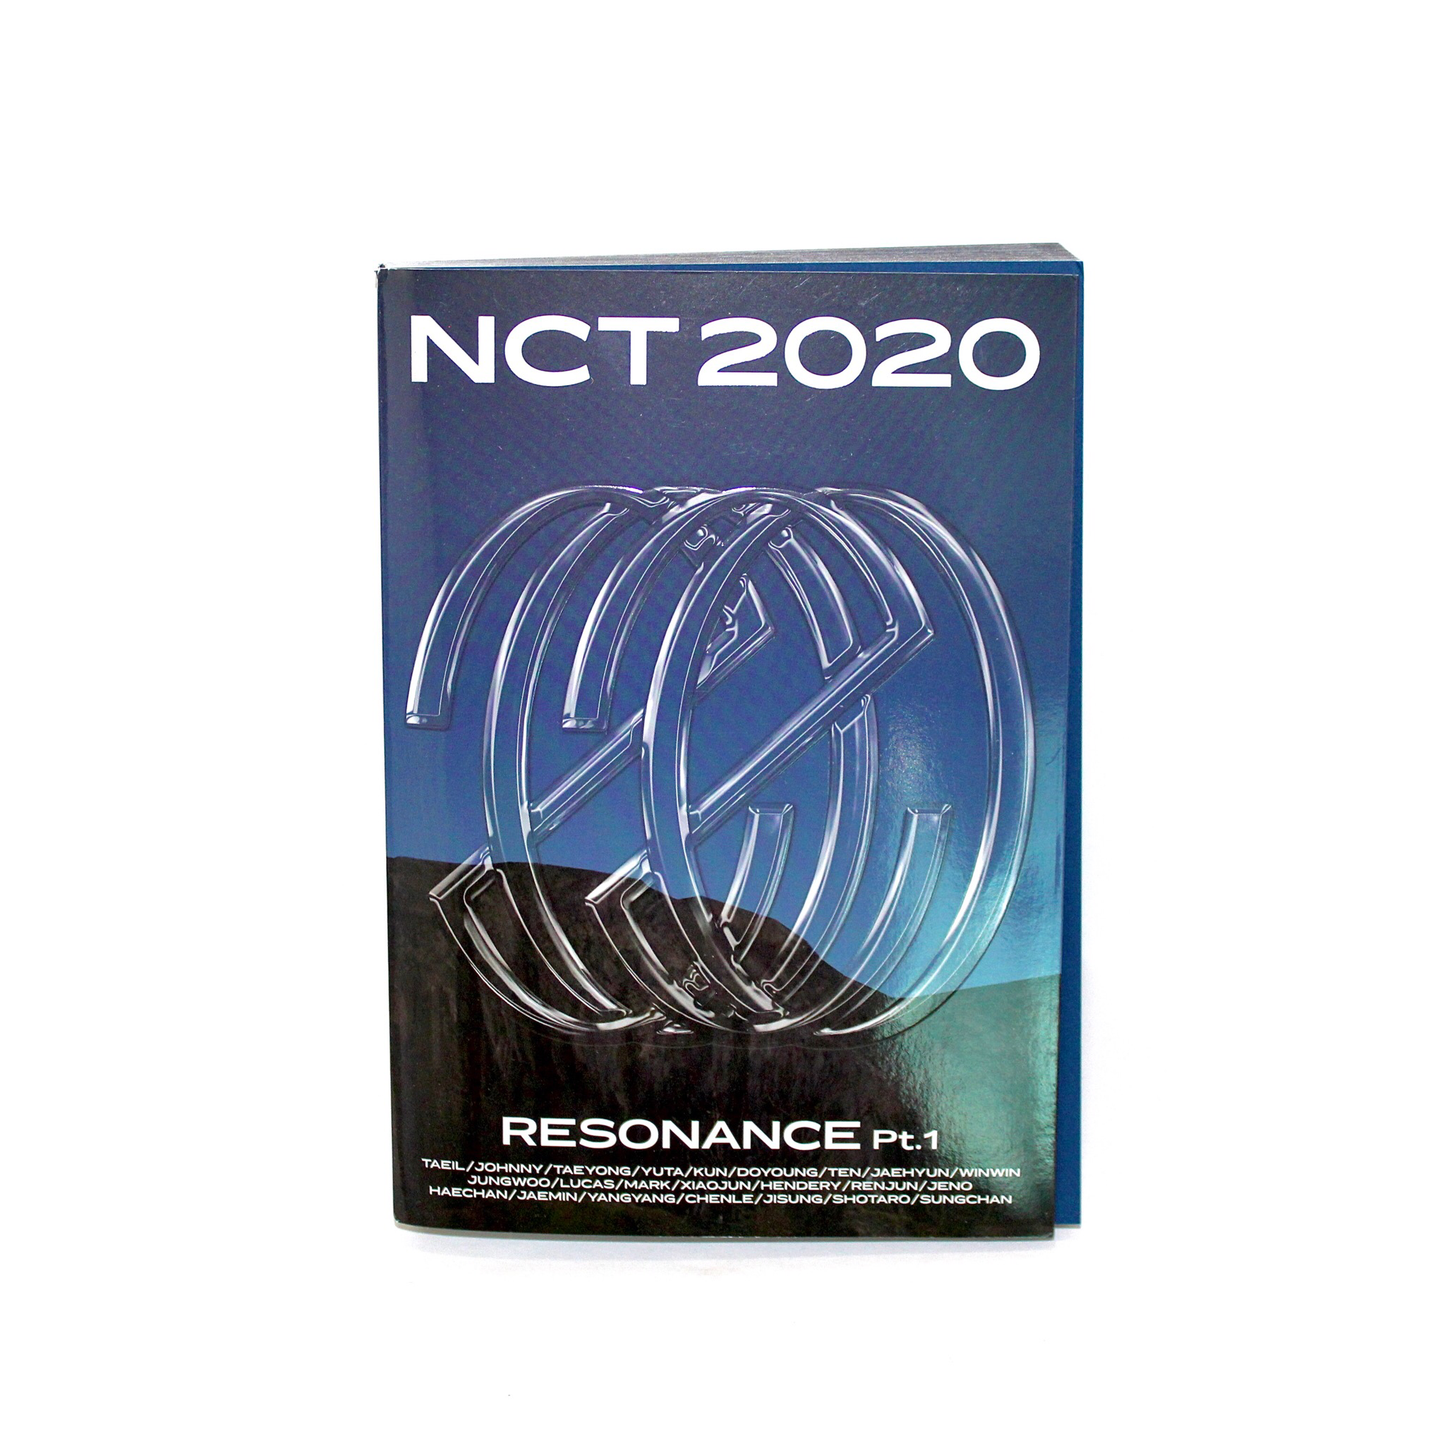 Segundo álbum de NCT: NCT 2020 Resonance Pt. 1 | El pasado Ver.